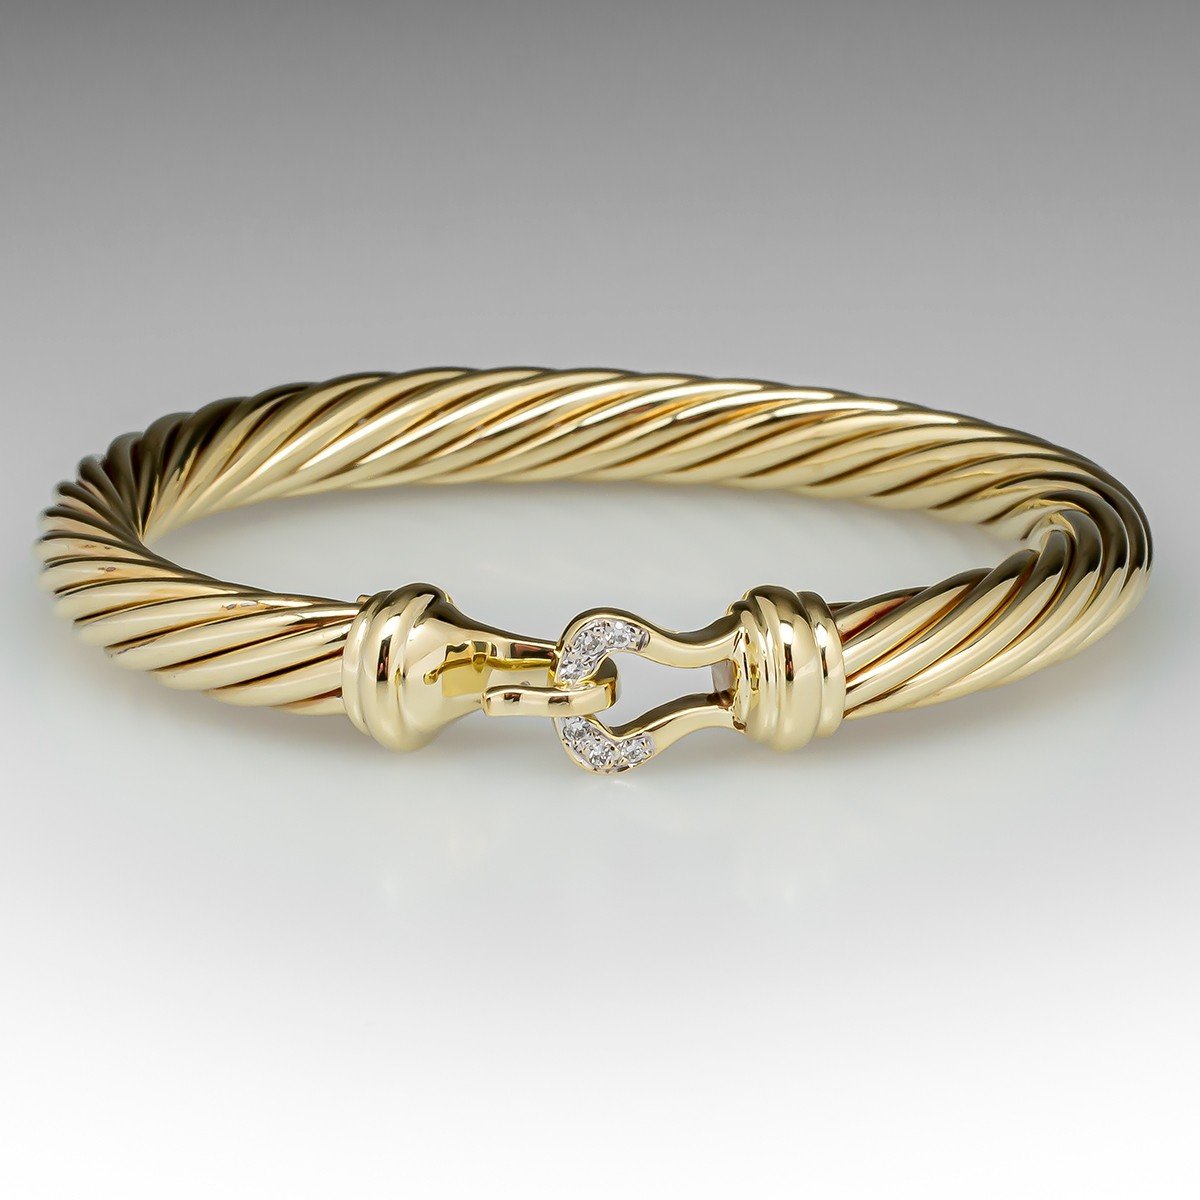 David Yurman | Chatelaine® Kids Bracelet in 18K Yellow Gold with Citrine,  4mm | Kids bracelets, Bracelets, Gold